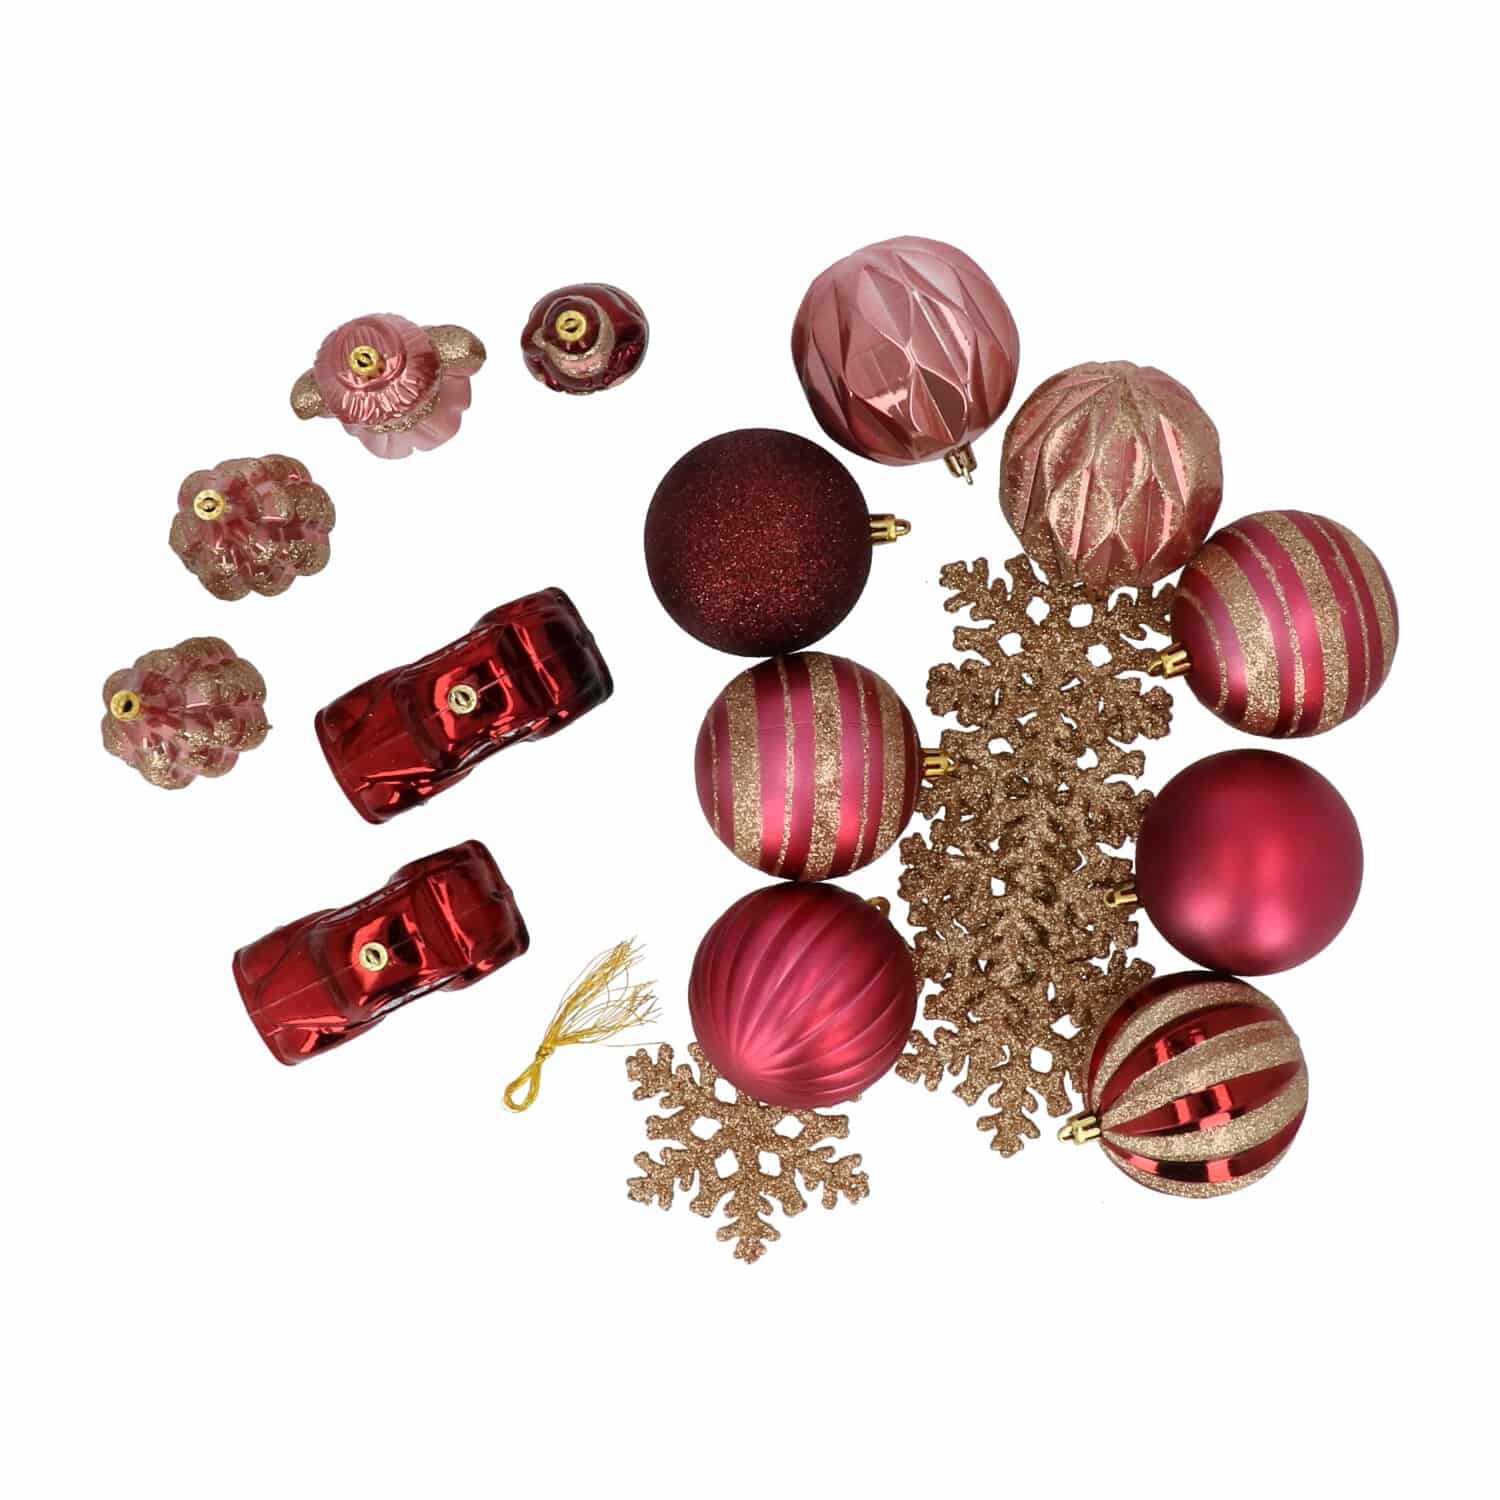 4goodz 20-delige decoratieve kerstballenset Champ/roze - binnen/buiten